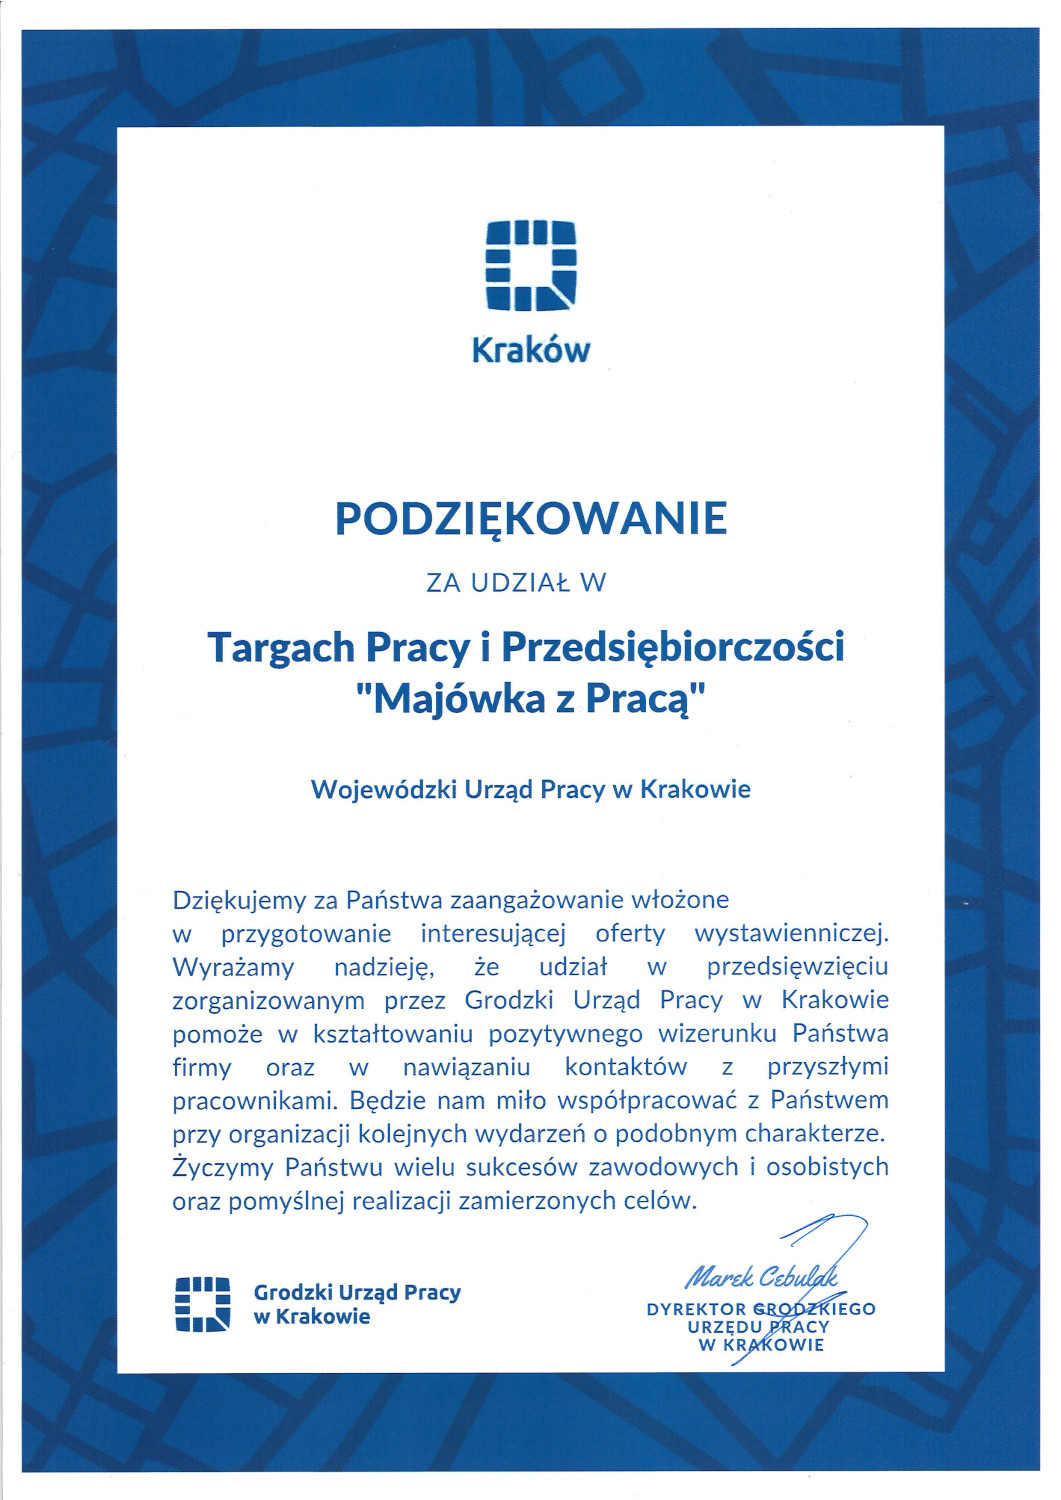 Podziękowanie na papierze firmowym z logotypem Miasta Kraków, podpisane odręcznie przez Marka Cebulaka, dyrektora Grodzkiego Urzędu Pracy w Krakowie.